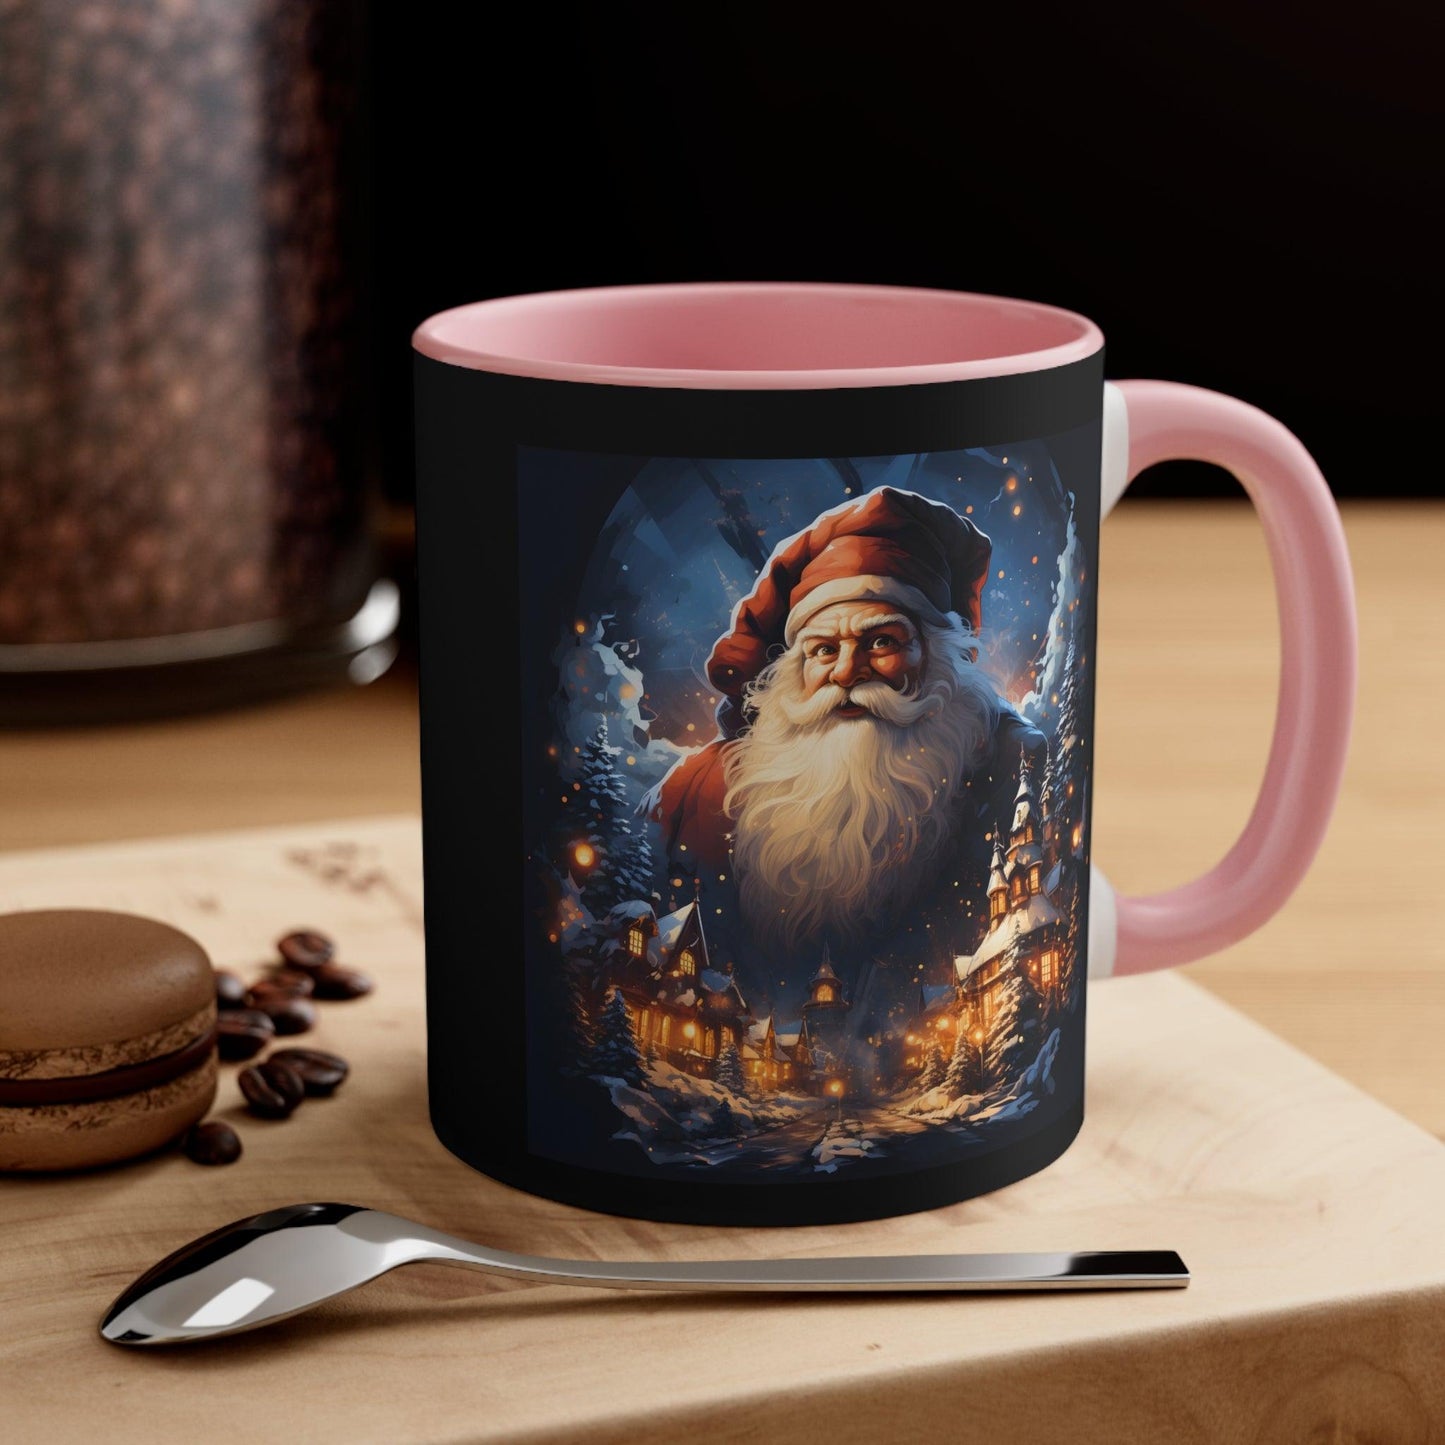 Santa Mug, Merry Christmas Coffee Mug, Christmas Coffee mug Hot Cocoa Mug 11oz Christmas Gift for Coffee lovers